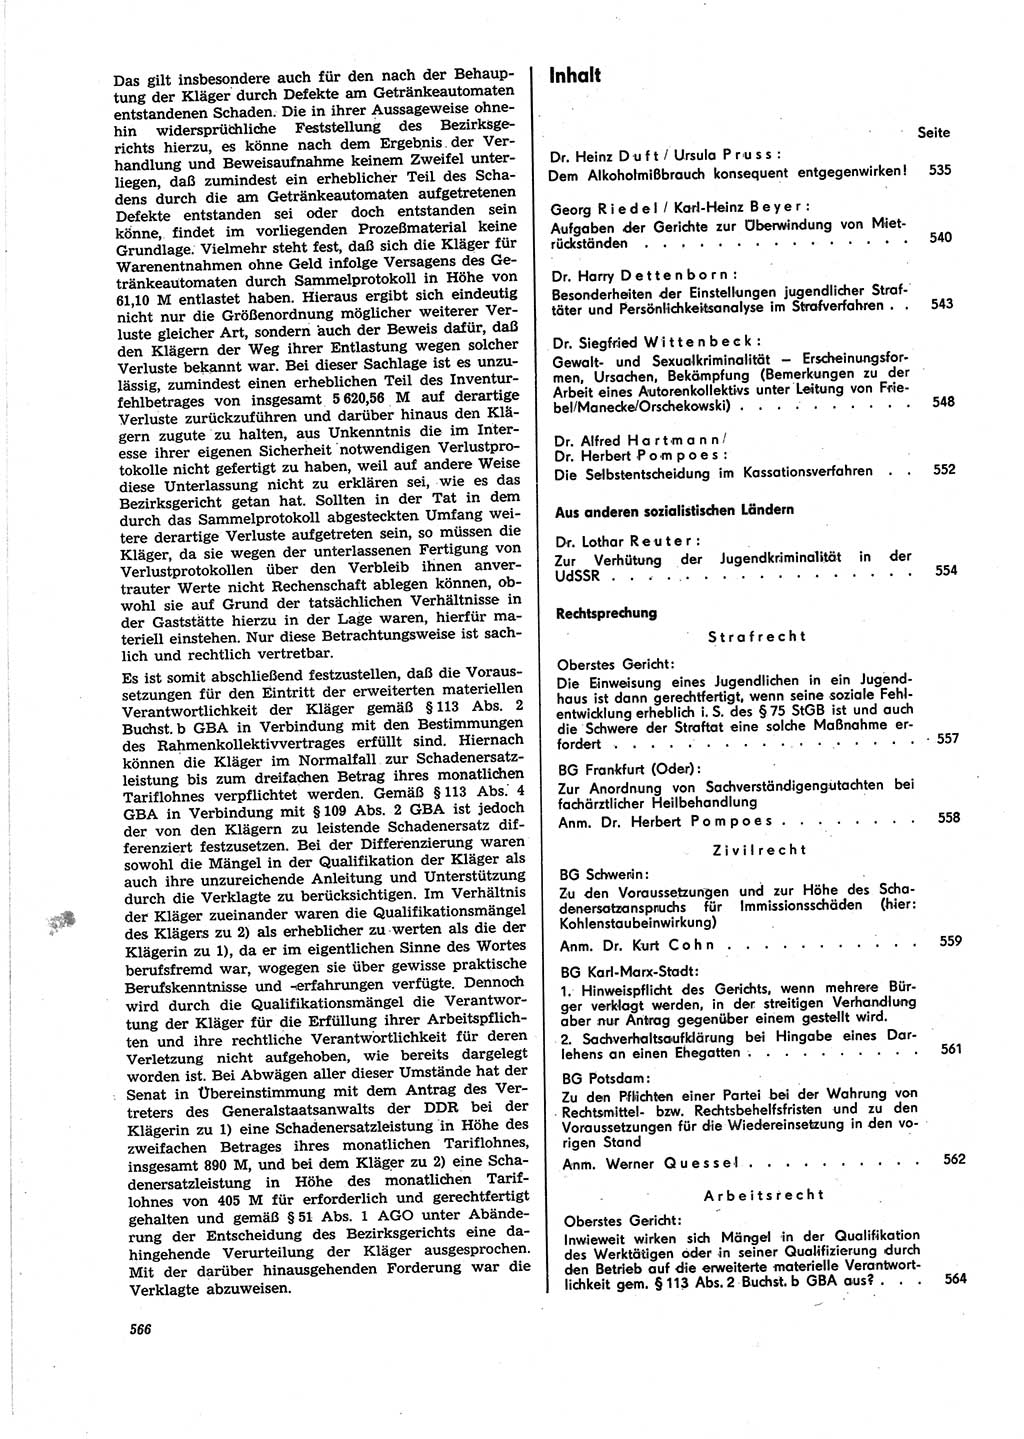 Neue Justiz (NJ), Zeitschrift für Recht und Rechtswissenschaft [Deutsche Demokratische Republik (DDR)], 25. Jahrgang 1971, Seite 566 (NJ DDR 1971, S. 566)